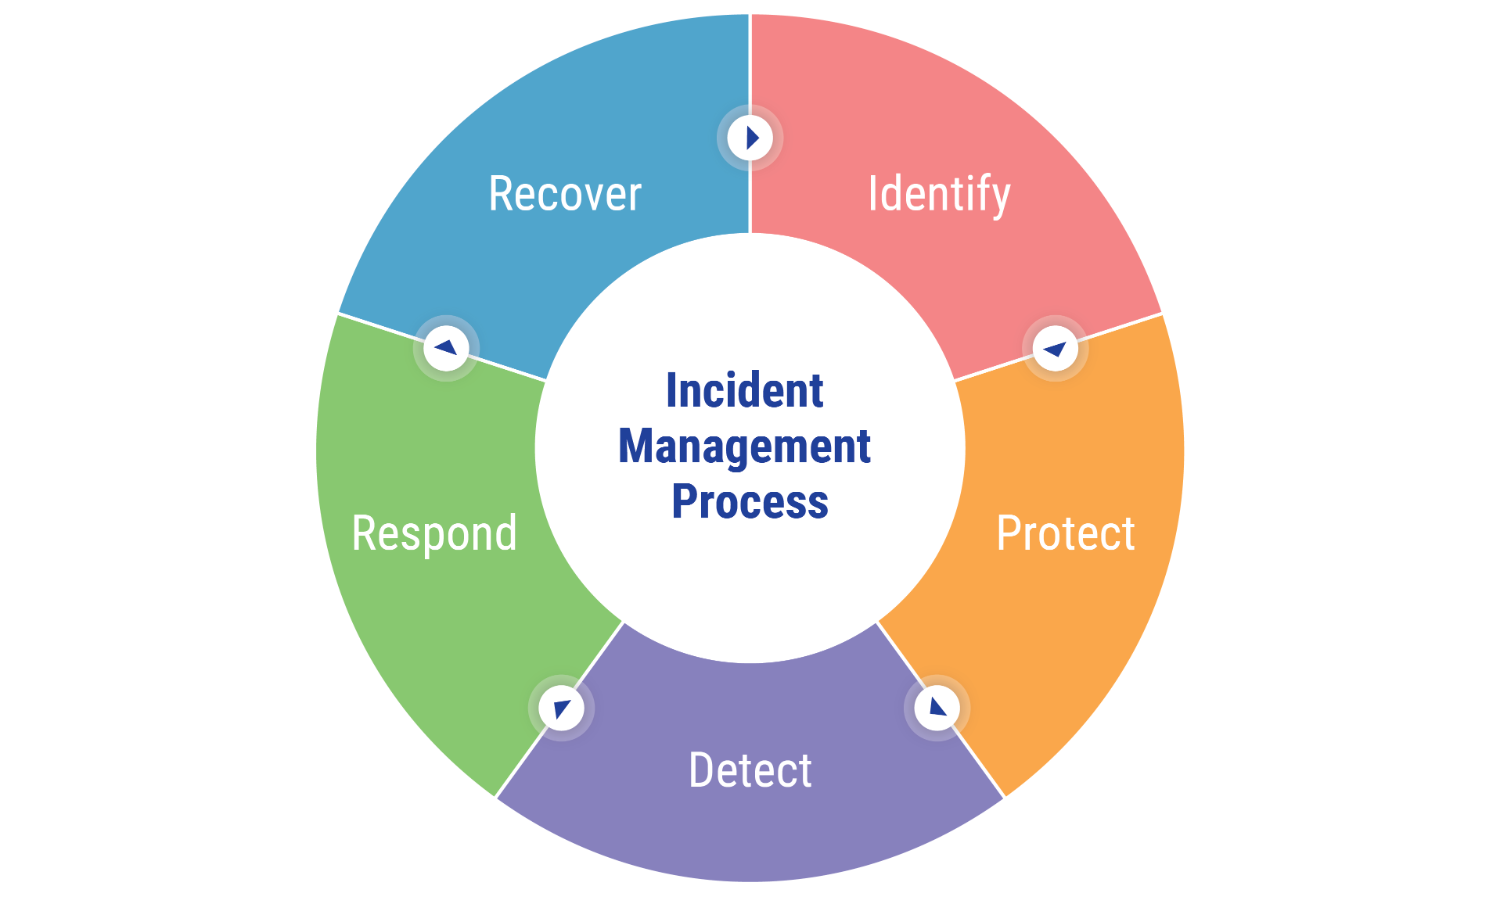 Incident Management Process